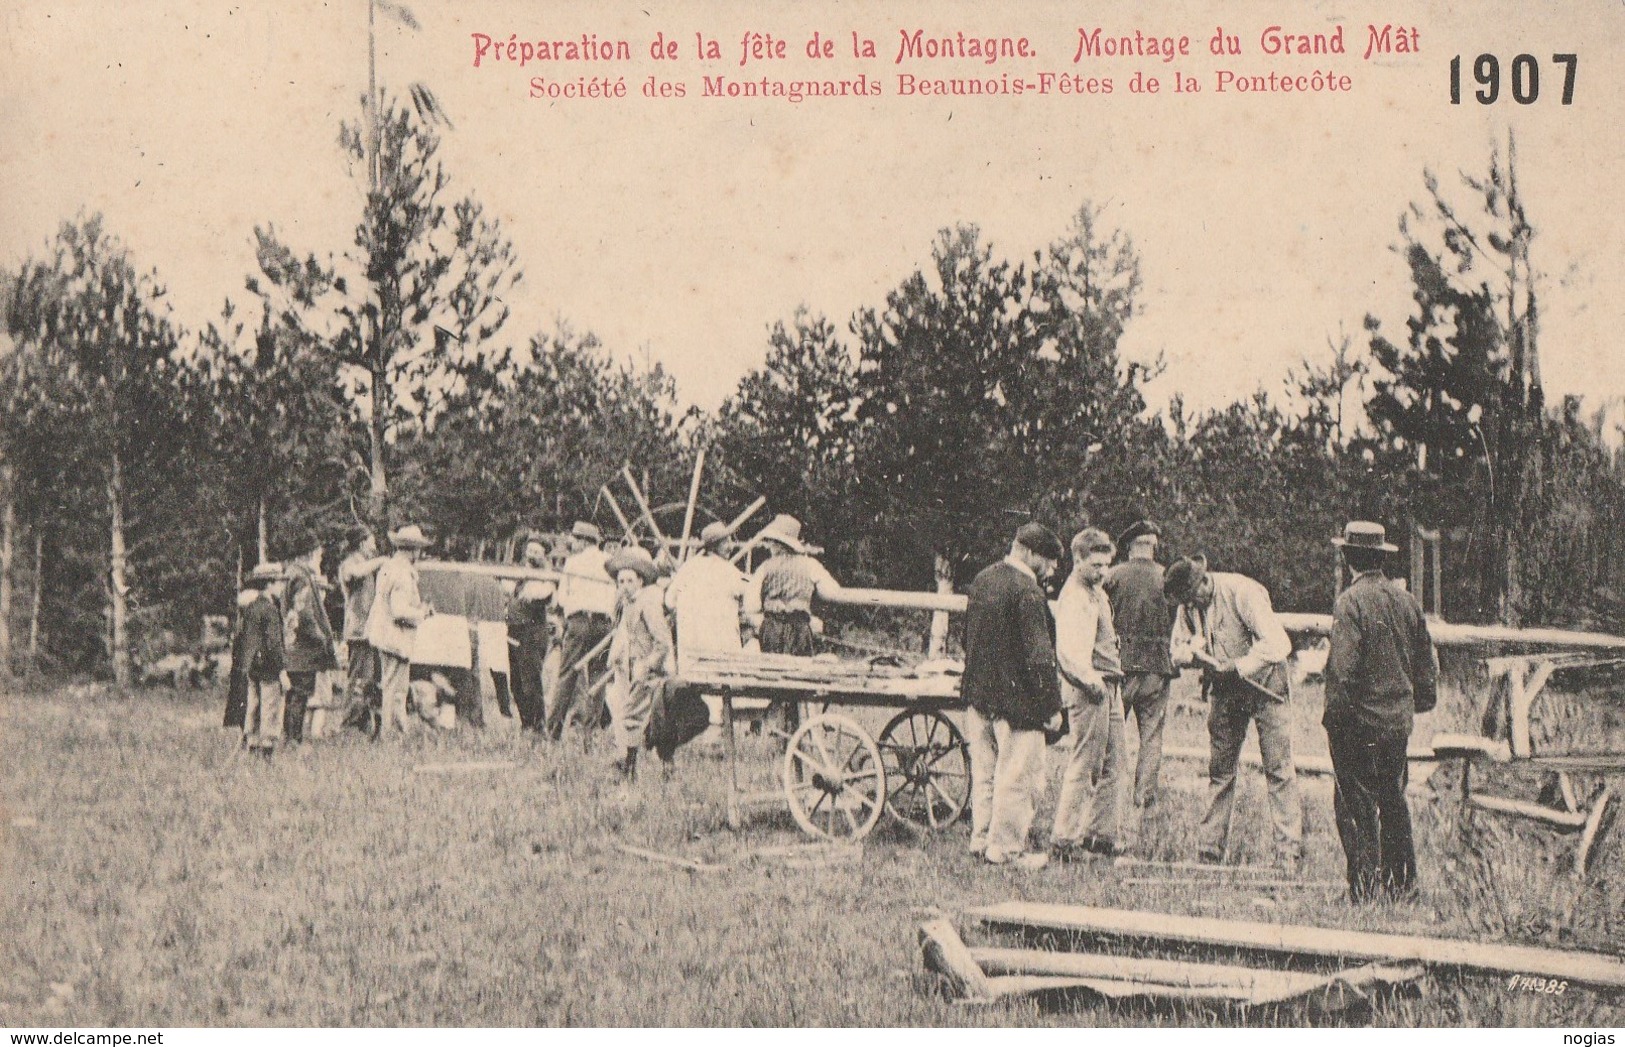 BEAUNE 1921 - PREPARATION DE LA FETE DE LA MONTAGNE - MONTAGE DU GRAND MAT - STE DES MONTAGNIARDS BEAUNOIS-FETES DE LA P - Beaune